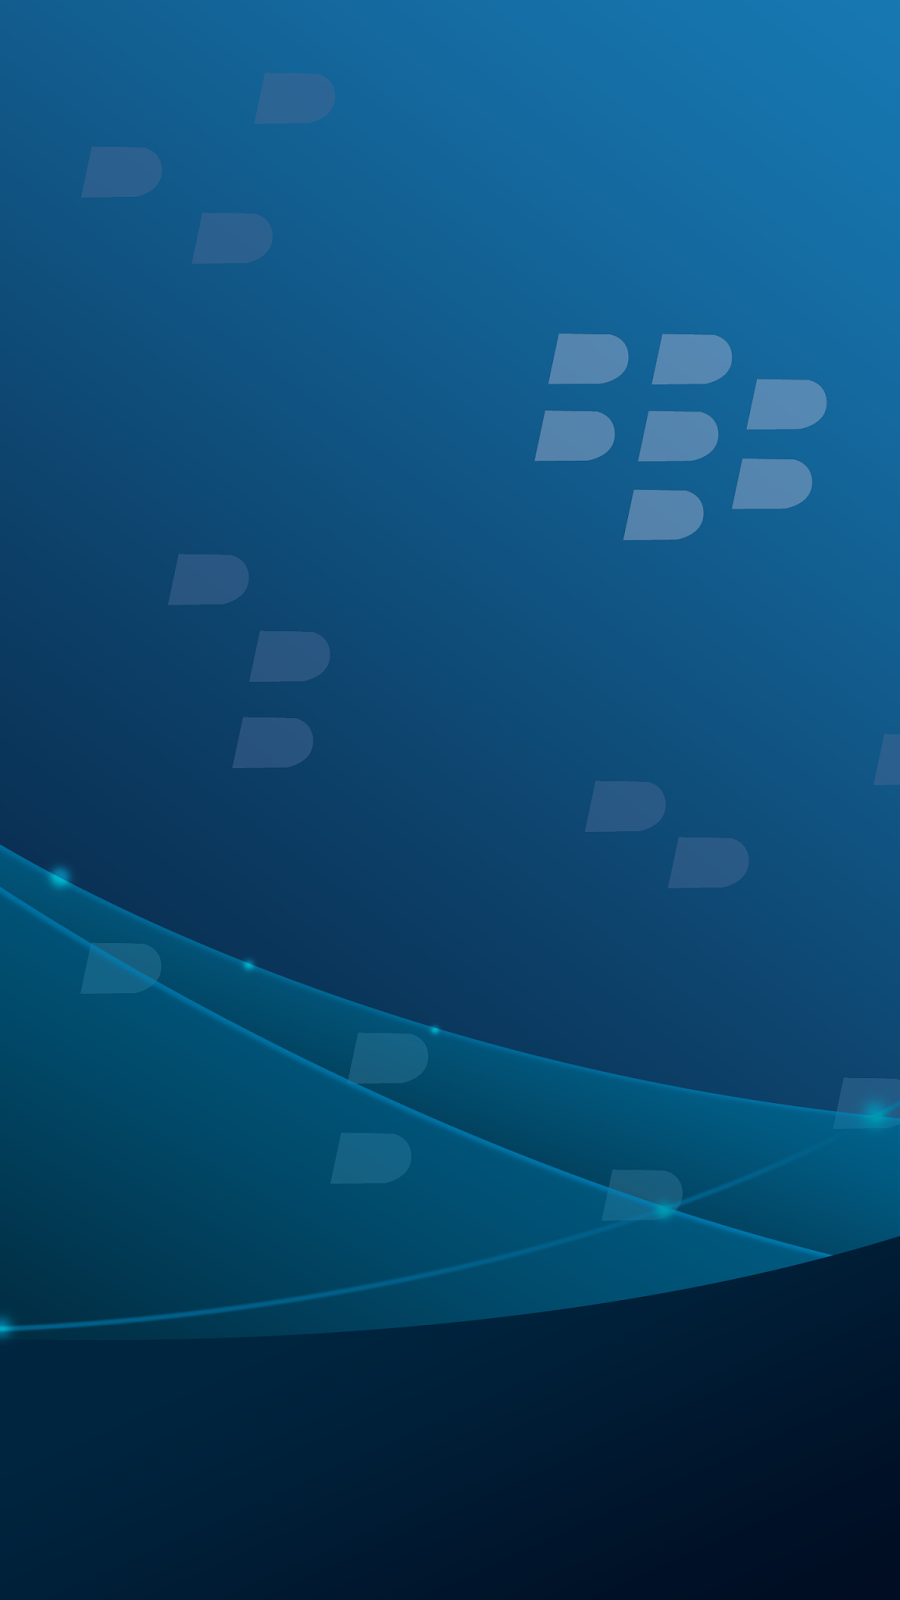 Blackberry Wallpaper - Blackberry Phone Z HQ Wall by ...